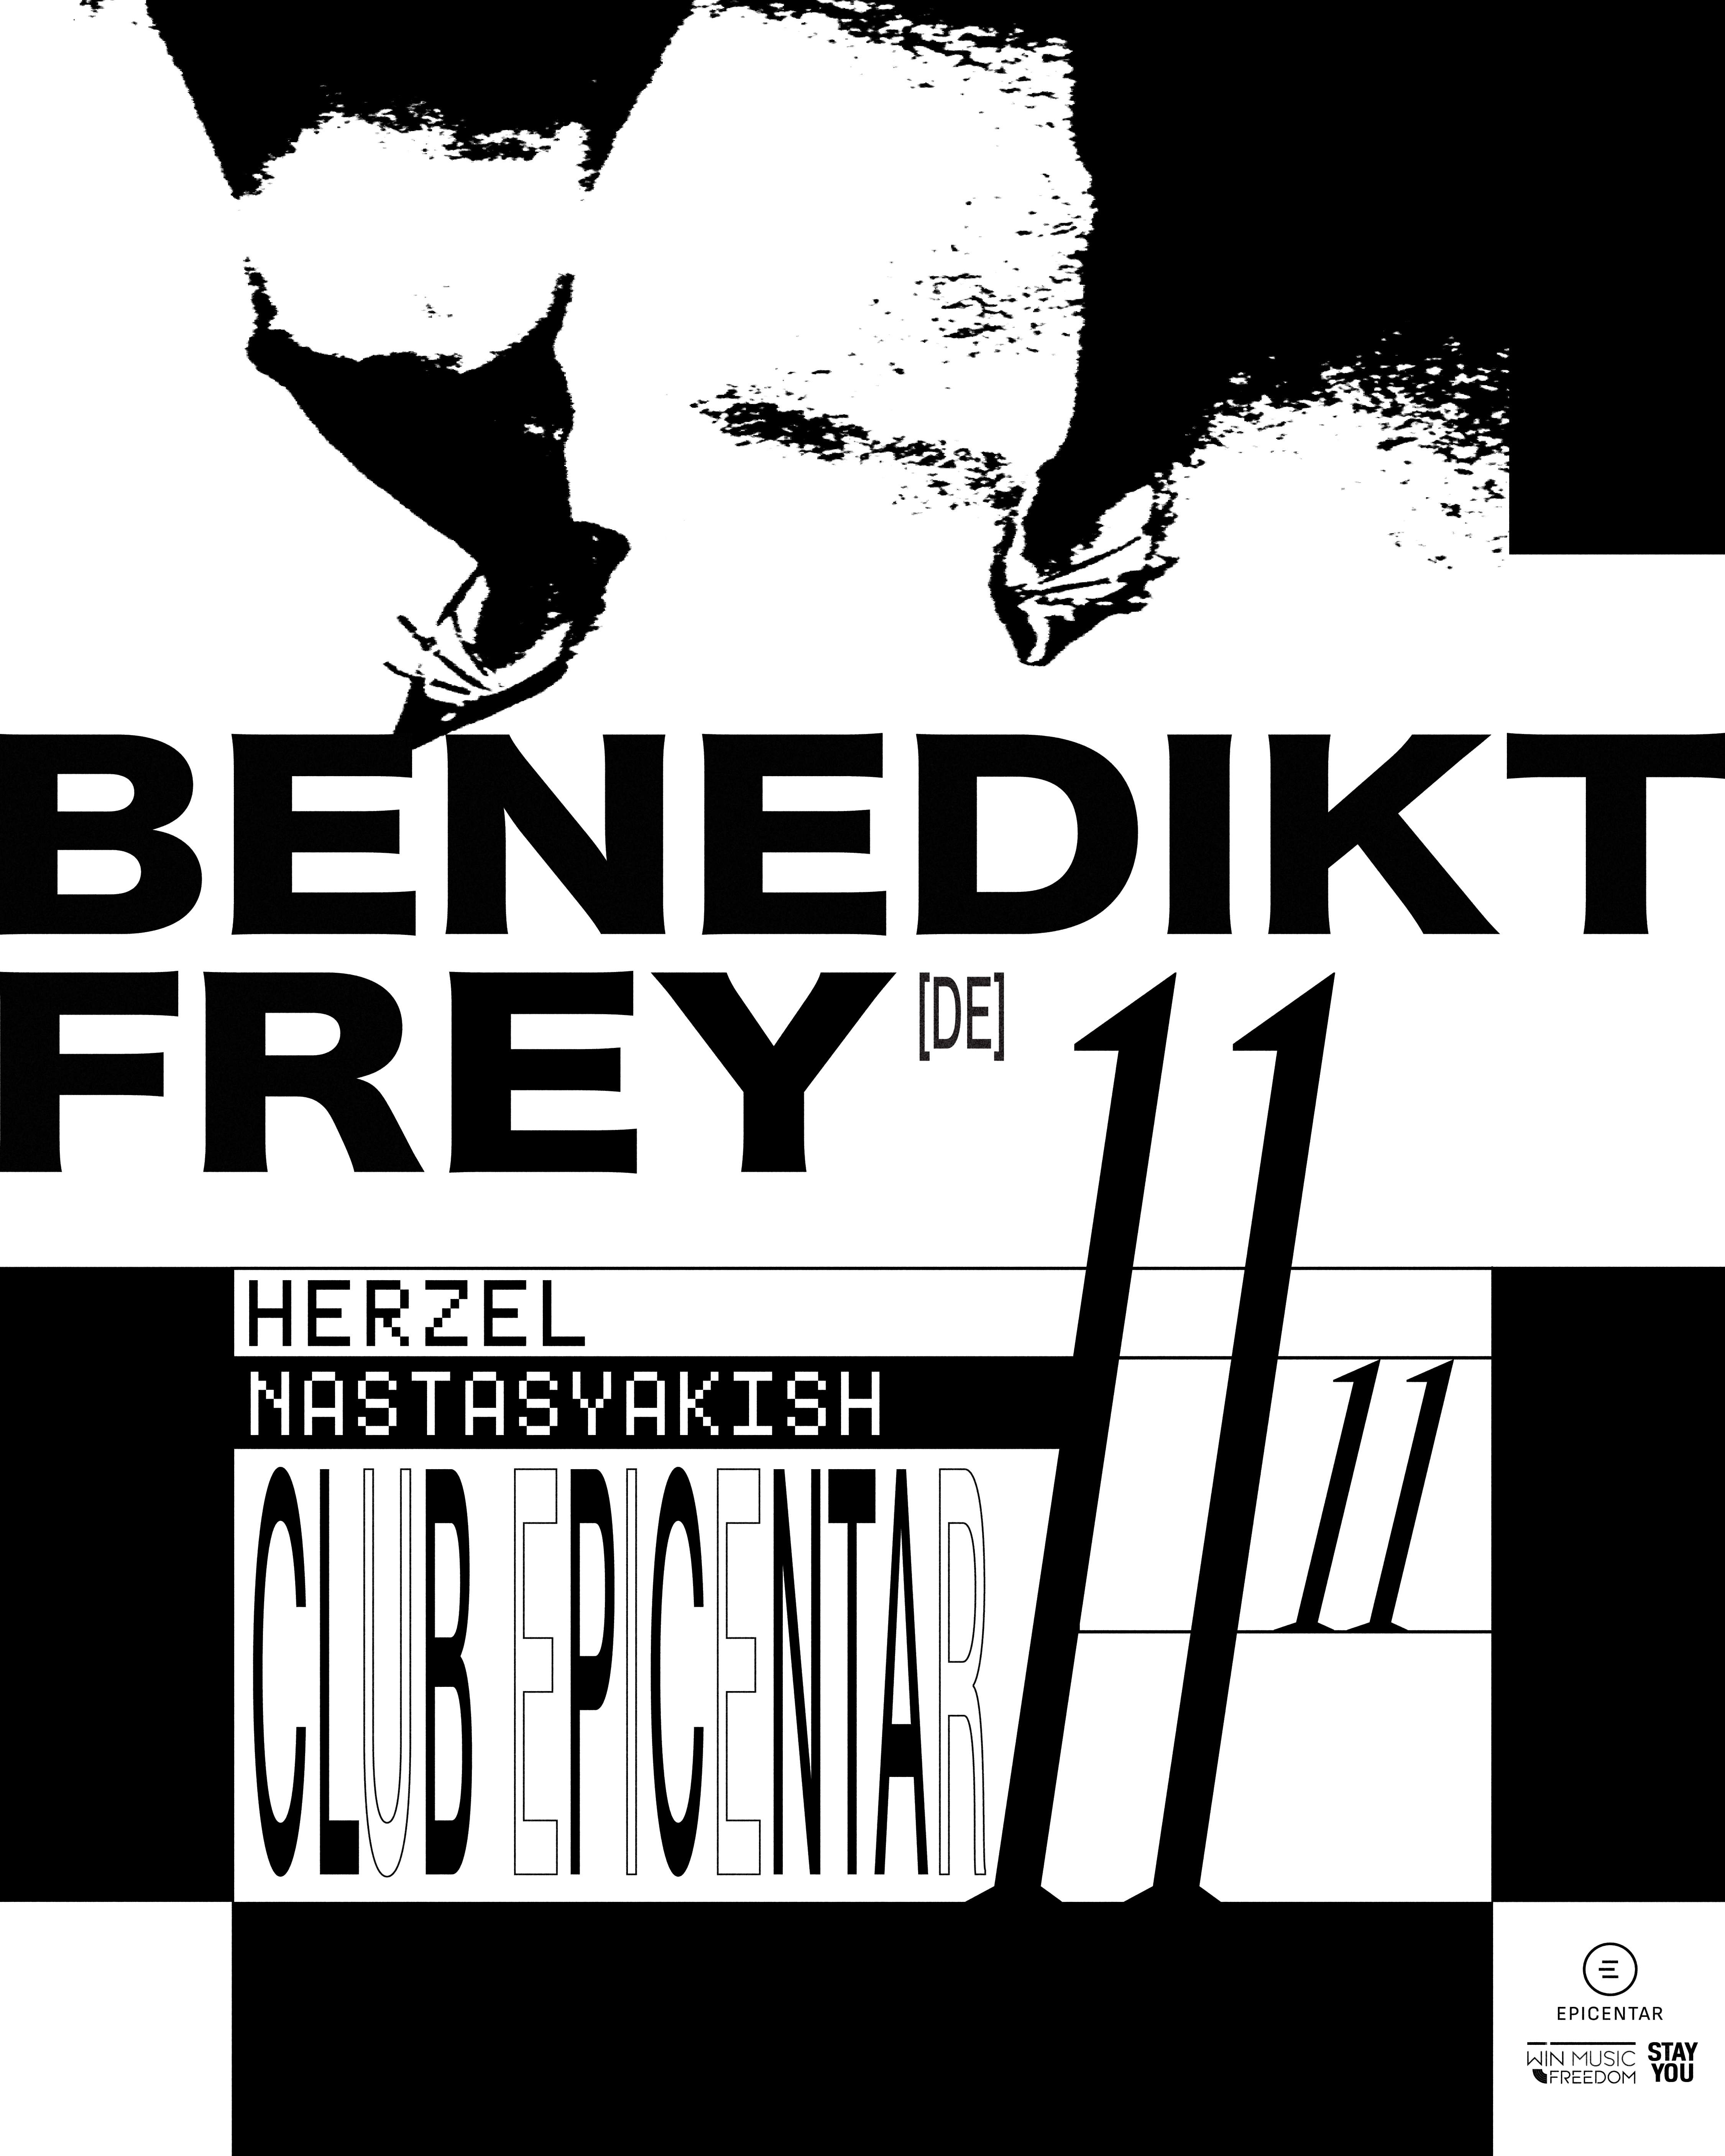 Benedikt Frey x Herzel x Nastasyakish - フライヤー表